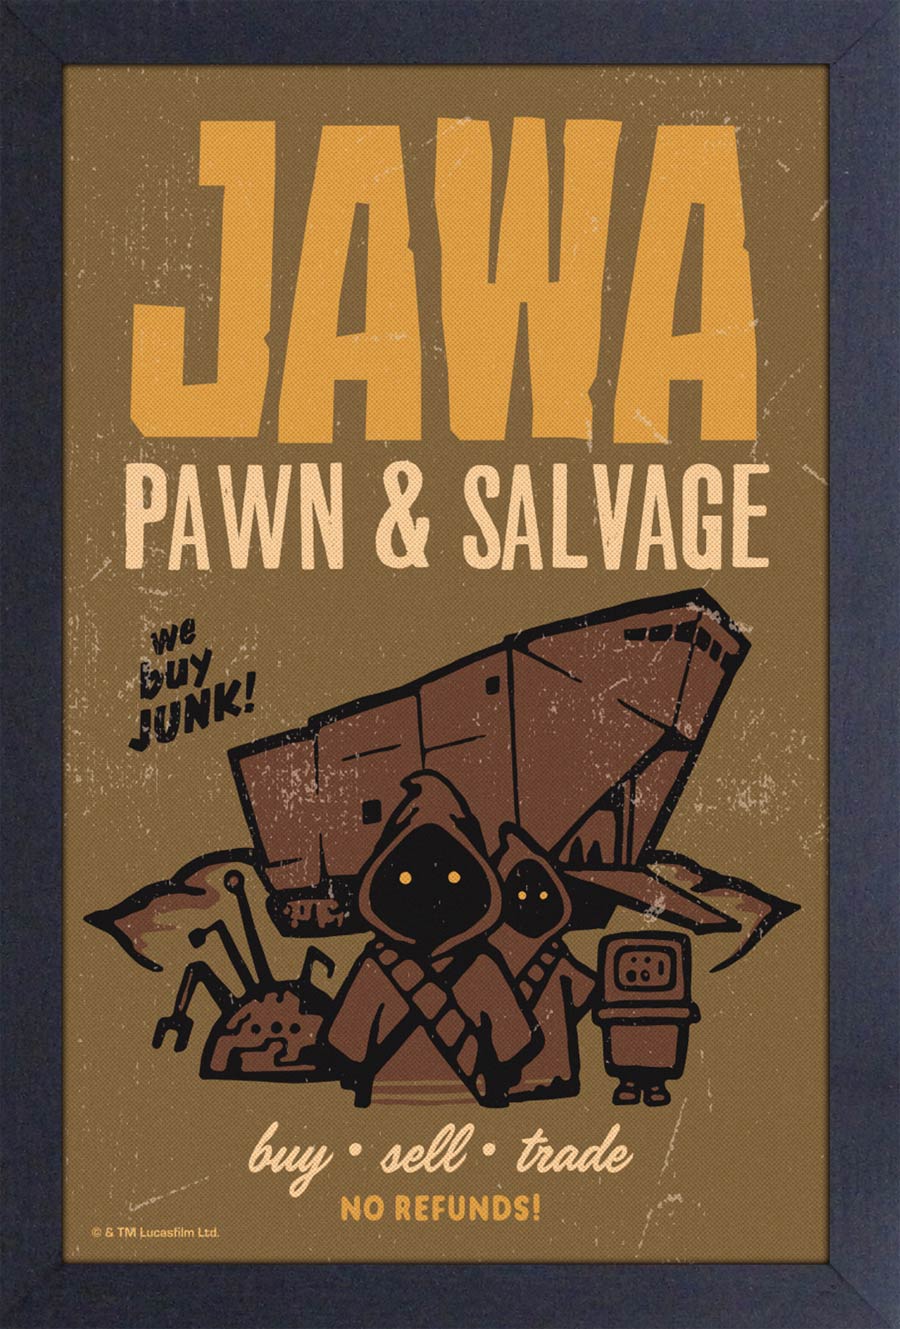 Star Wars 11x17 Framed Art Print - Jawa Pawn & Salvage